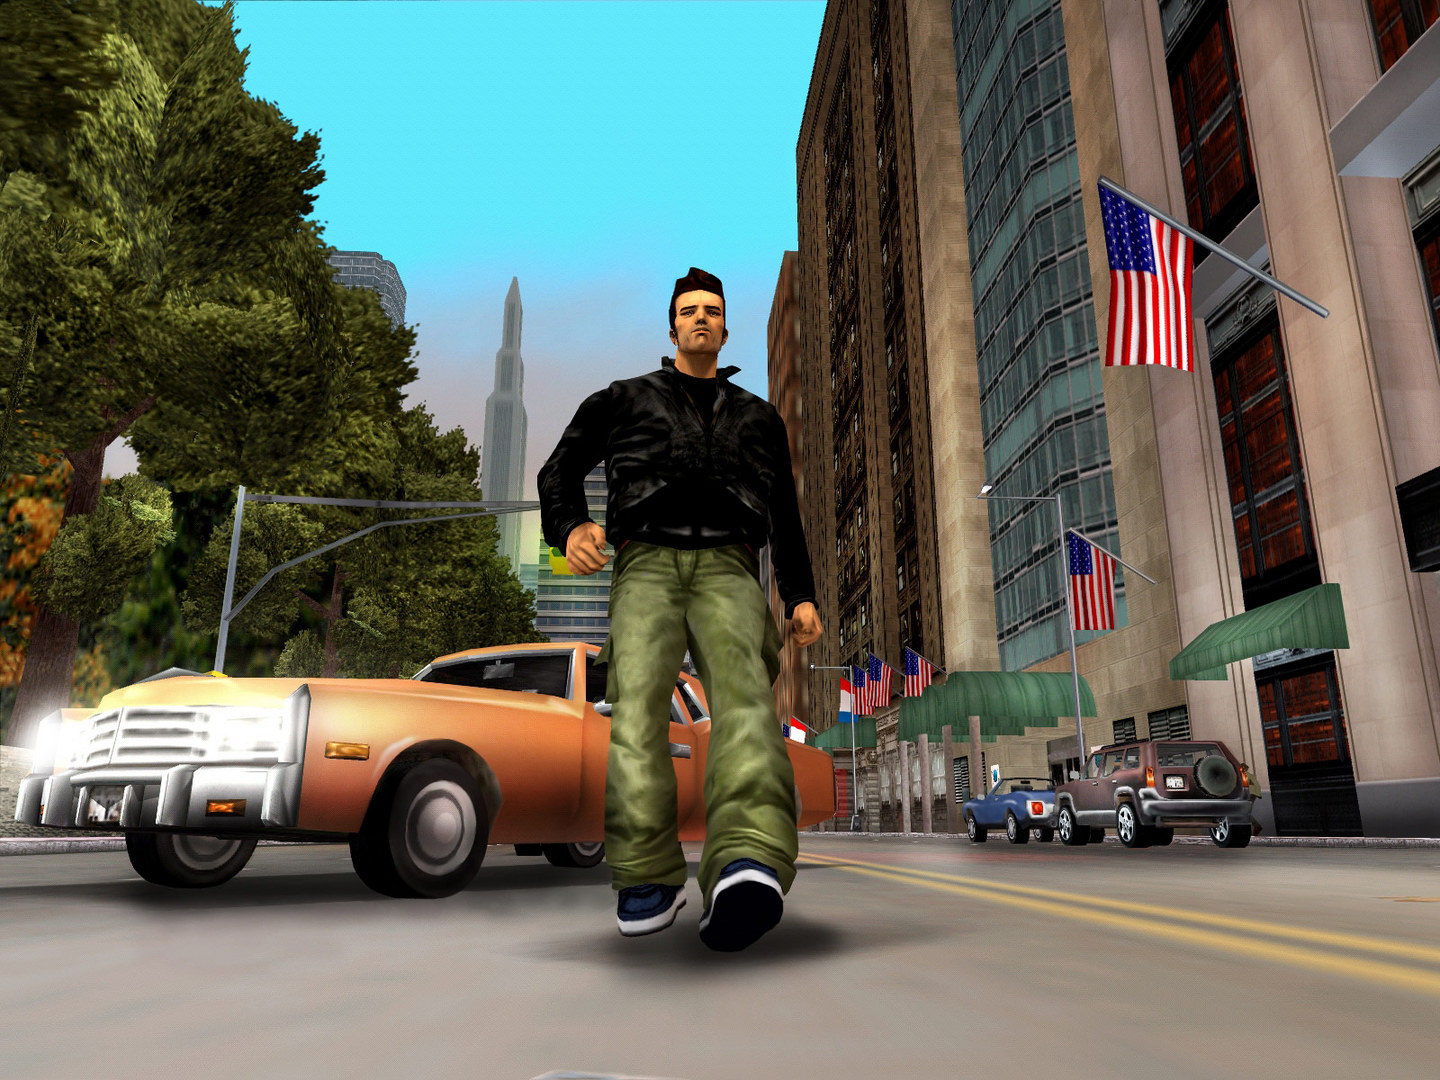 Clásico del mes, vol. 26: “Grand Theft Auto III”